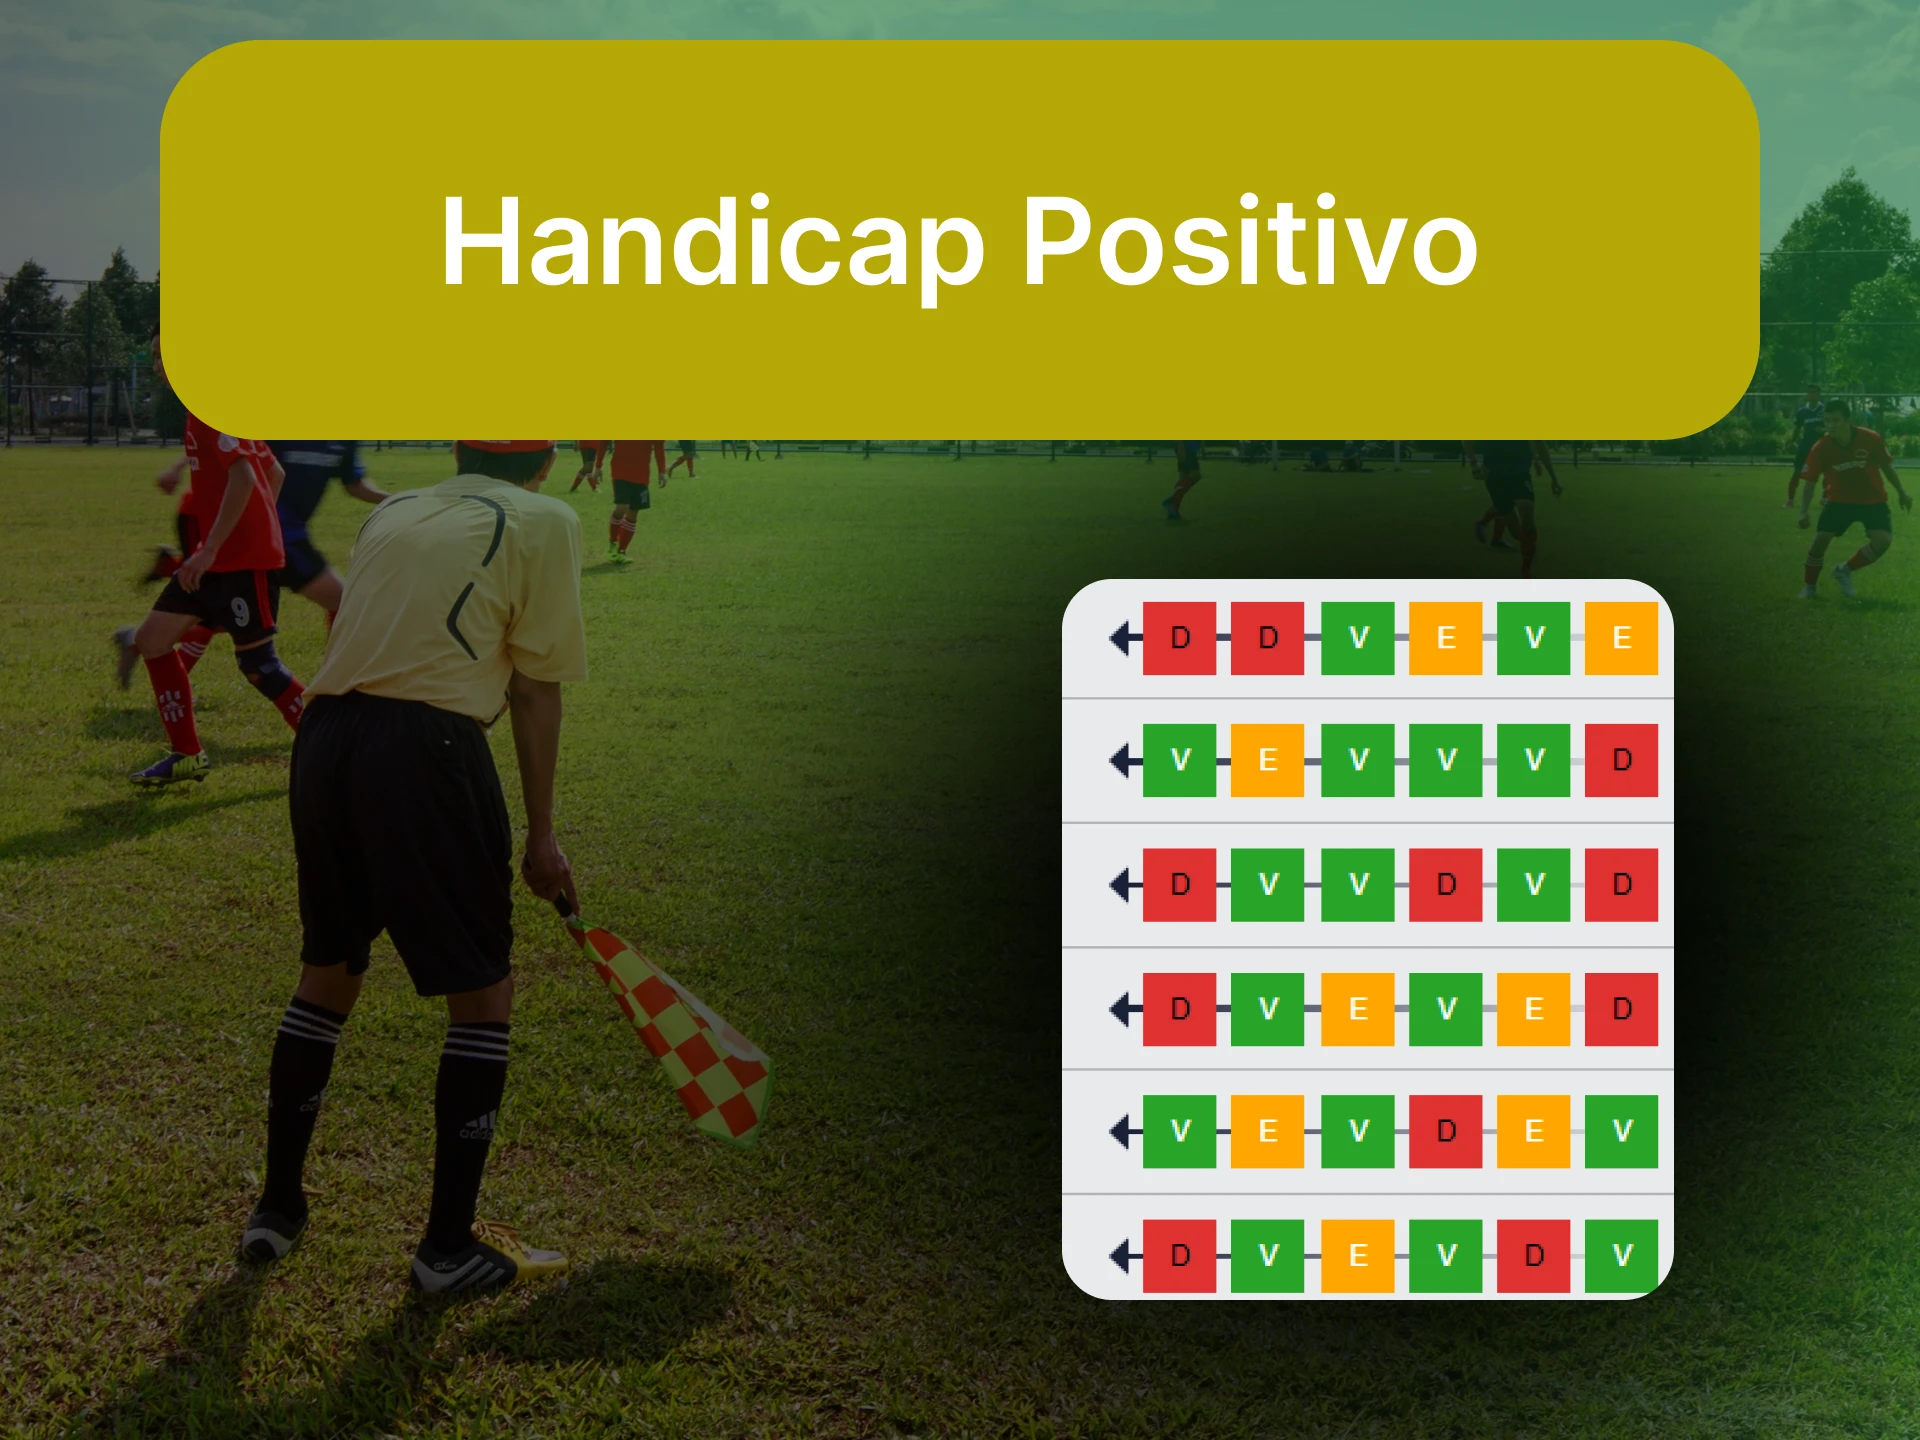 Para apostar no futebol, escolha a estratégia "Handicap Positivo".